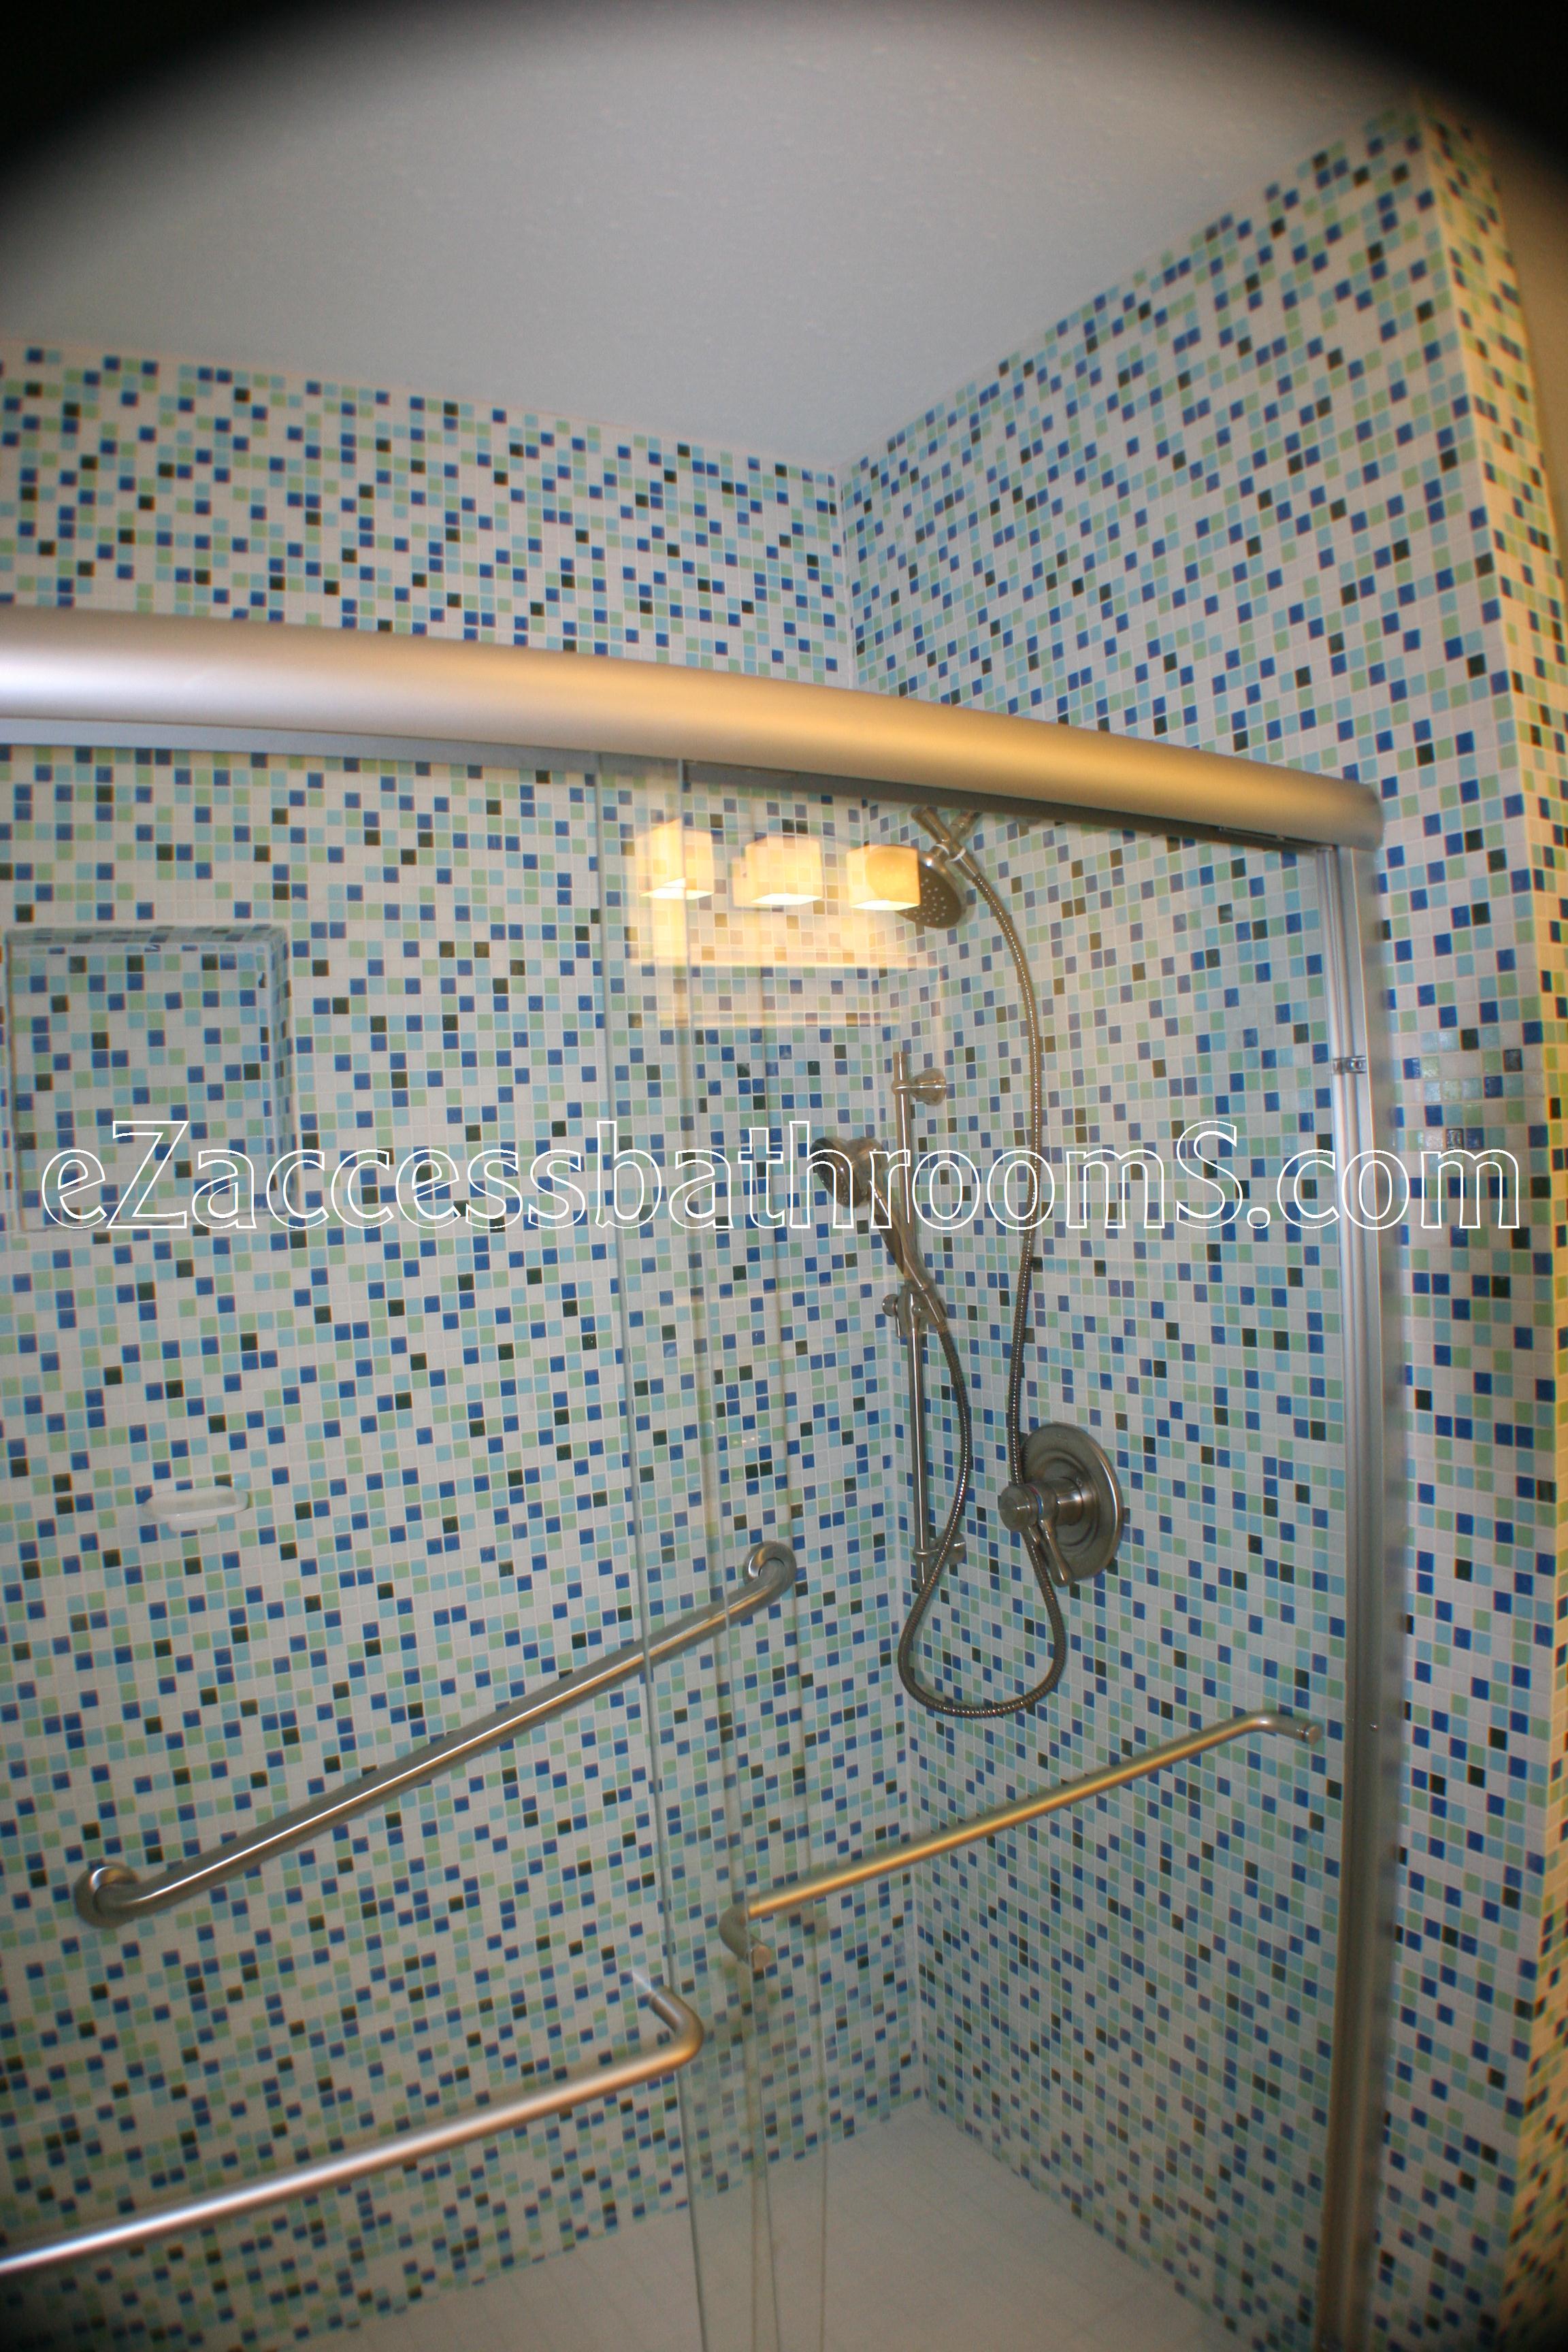 rollin shower ezaccessbathrooms.com 0020.JPG